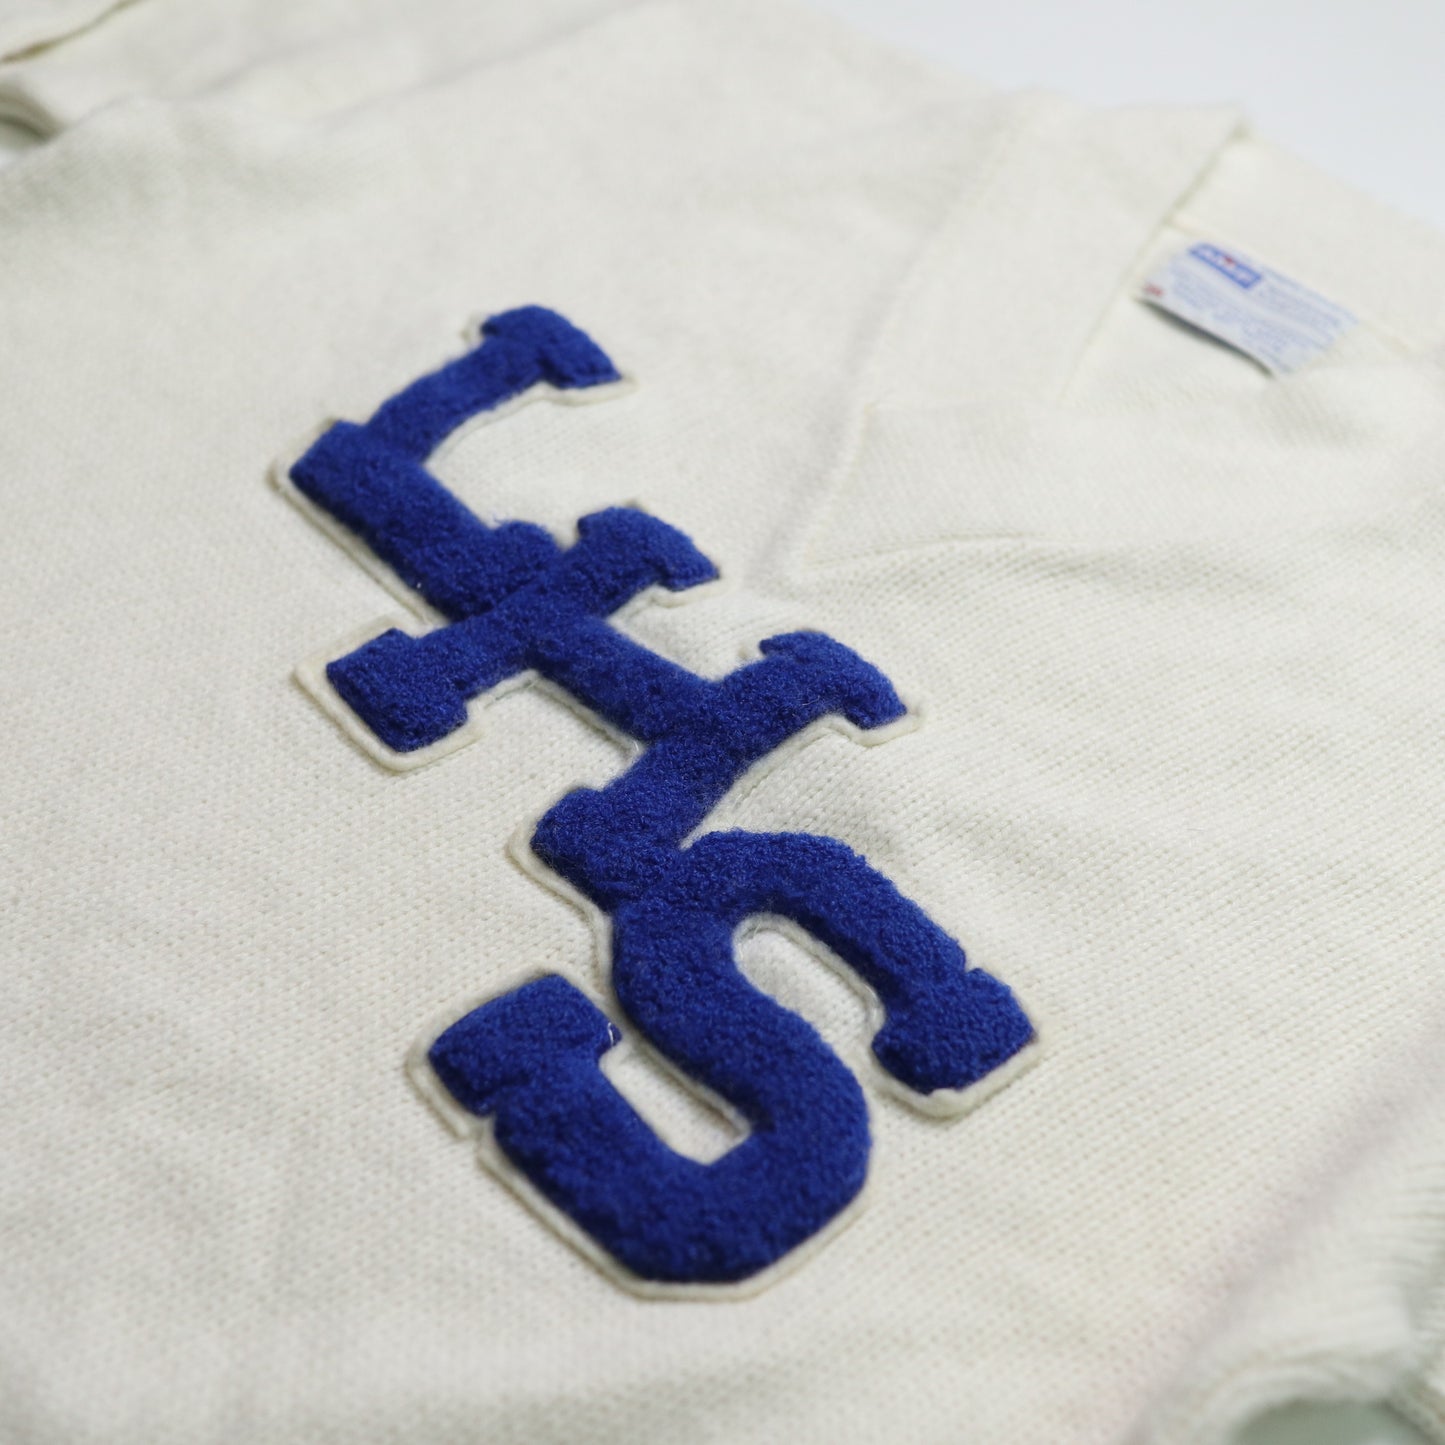 70's AMF 白色V領校園針織衫 Letterman Sweater 套頭針織毛衣